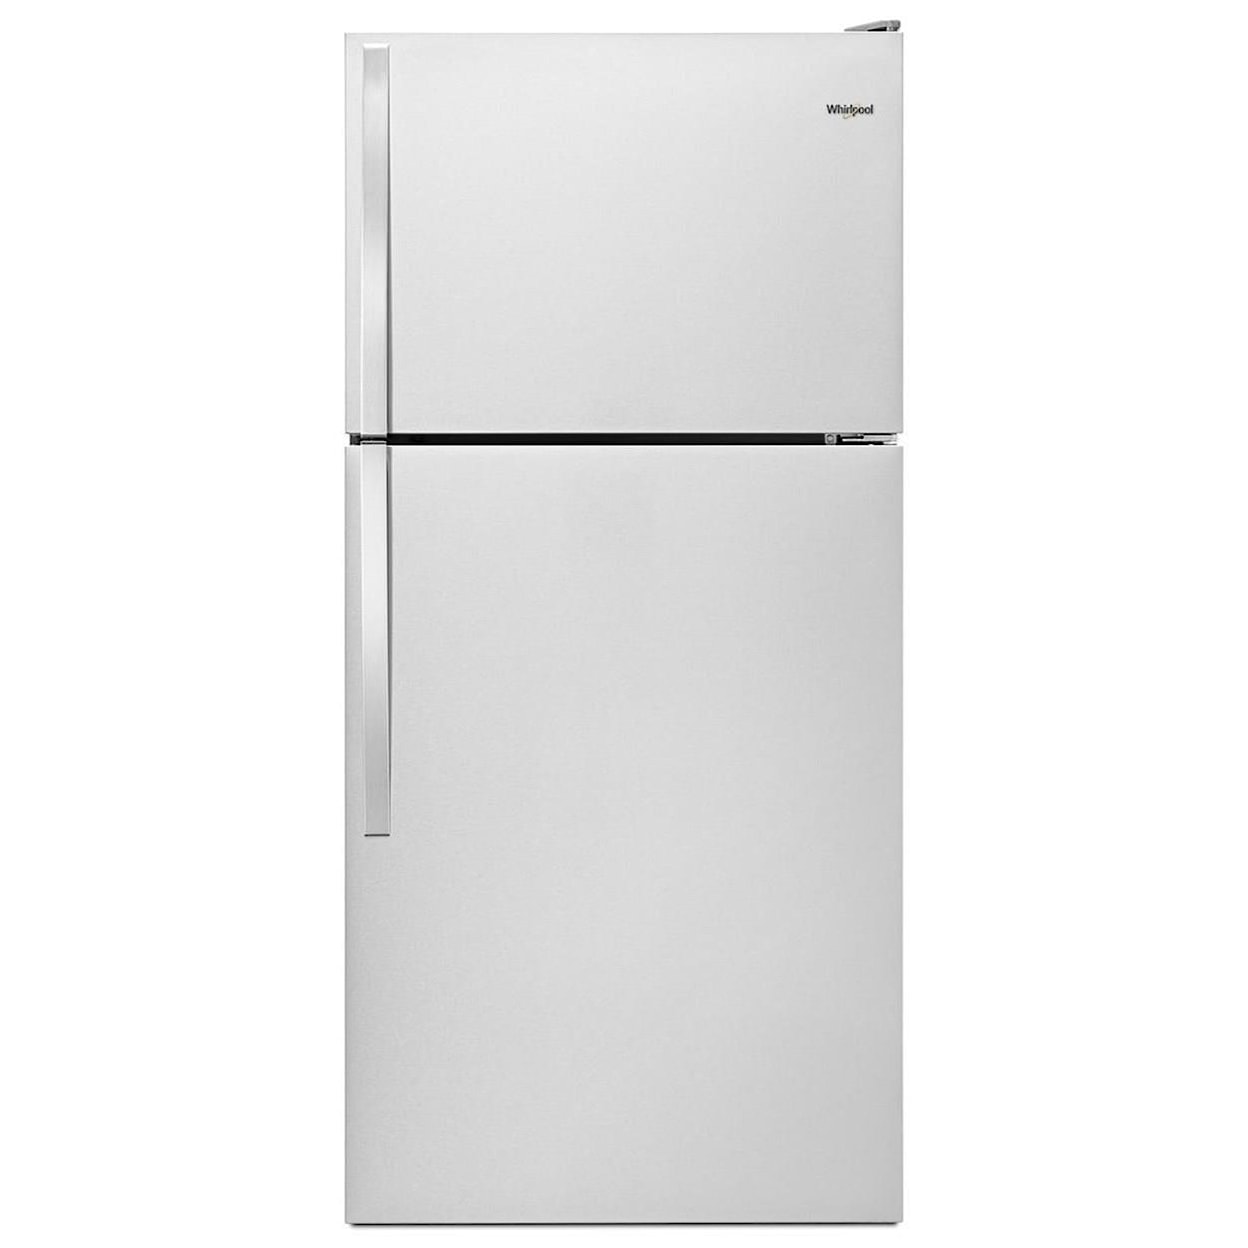 Whirlpool Top Mount Refrigerators 30" Wide Top-Freezer Refrigerator